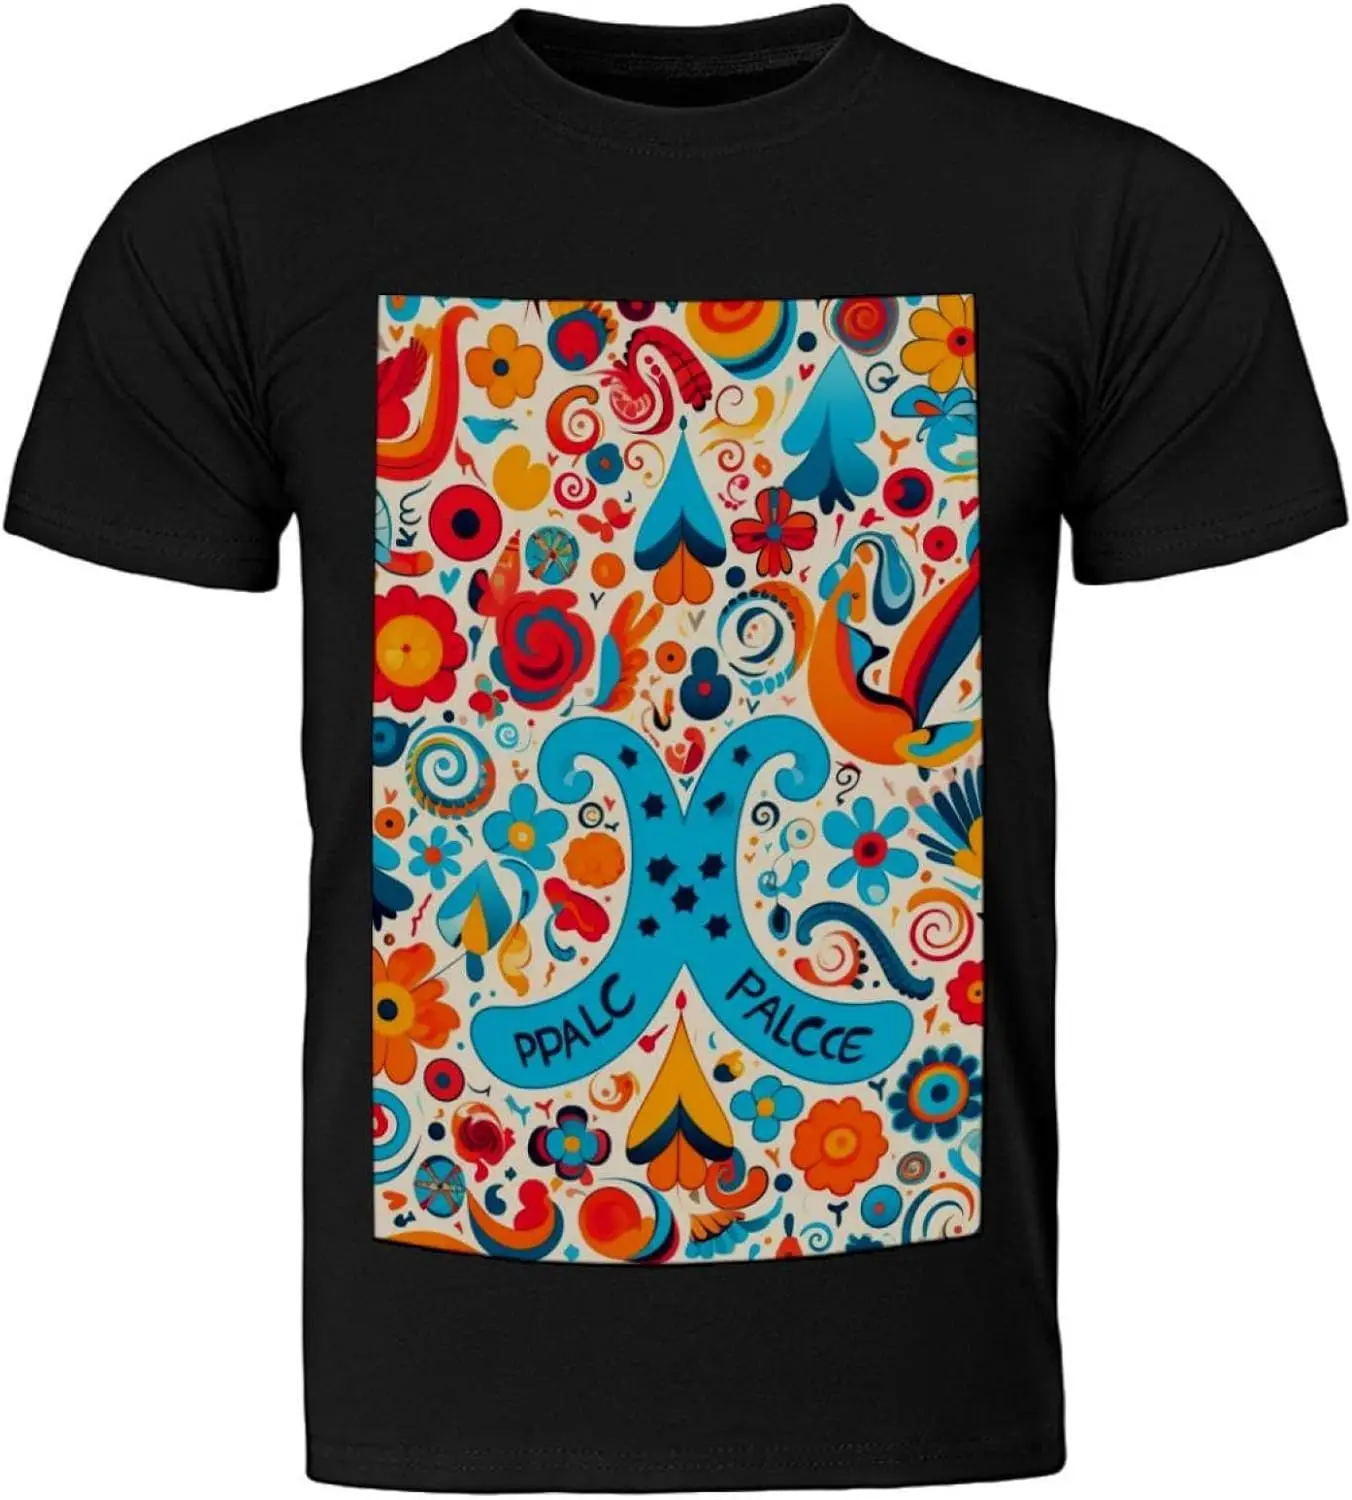 

Мужская хлопковая футболка с коротким рукавом, черная классическая Повседневная футболка из дышащего материала с изображением голубей и цветных цветов, 100%